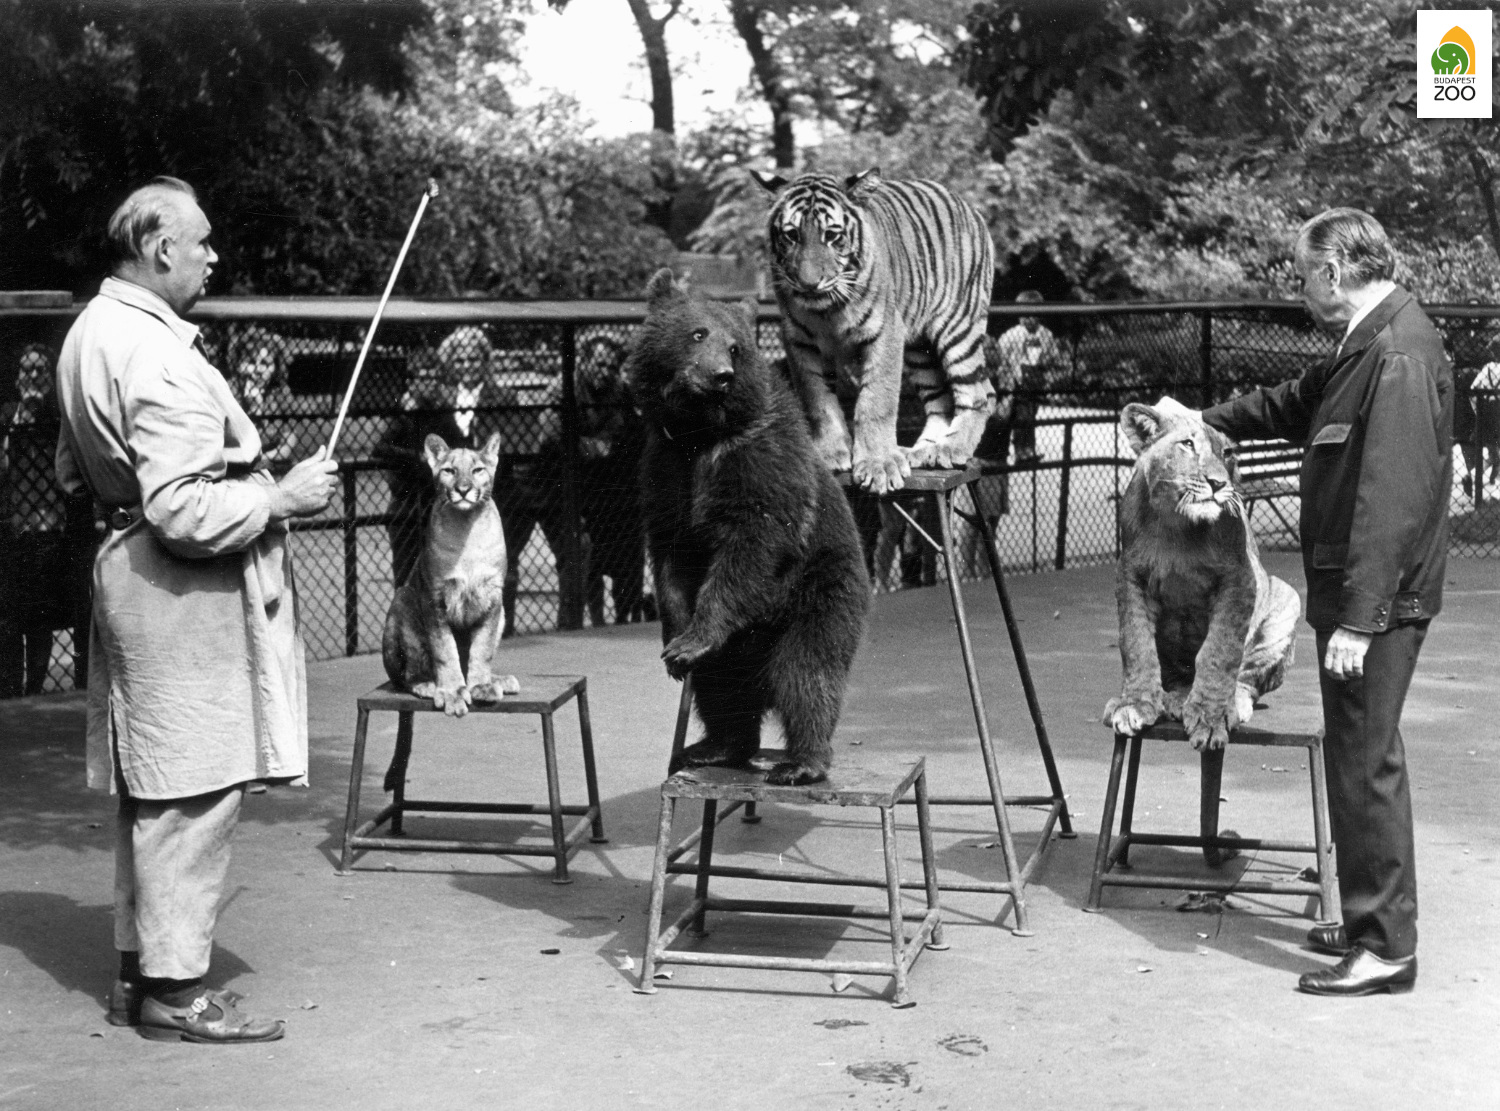 09 - "Munkaterápiás foglalkozás" az állatóvodában fiatal ragadozóknak (1970). A kép bal szélén Huszár Sándor főápoló, a jobb szélén Szederjei Ákos, az Állatkert akkori főigazgatója látható. Kapocsy György felvétele